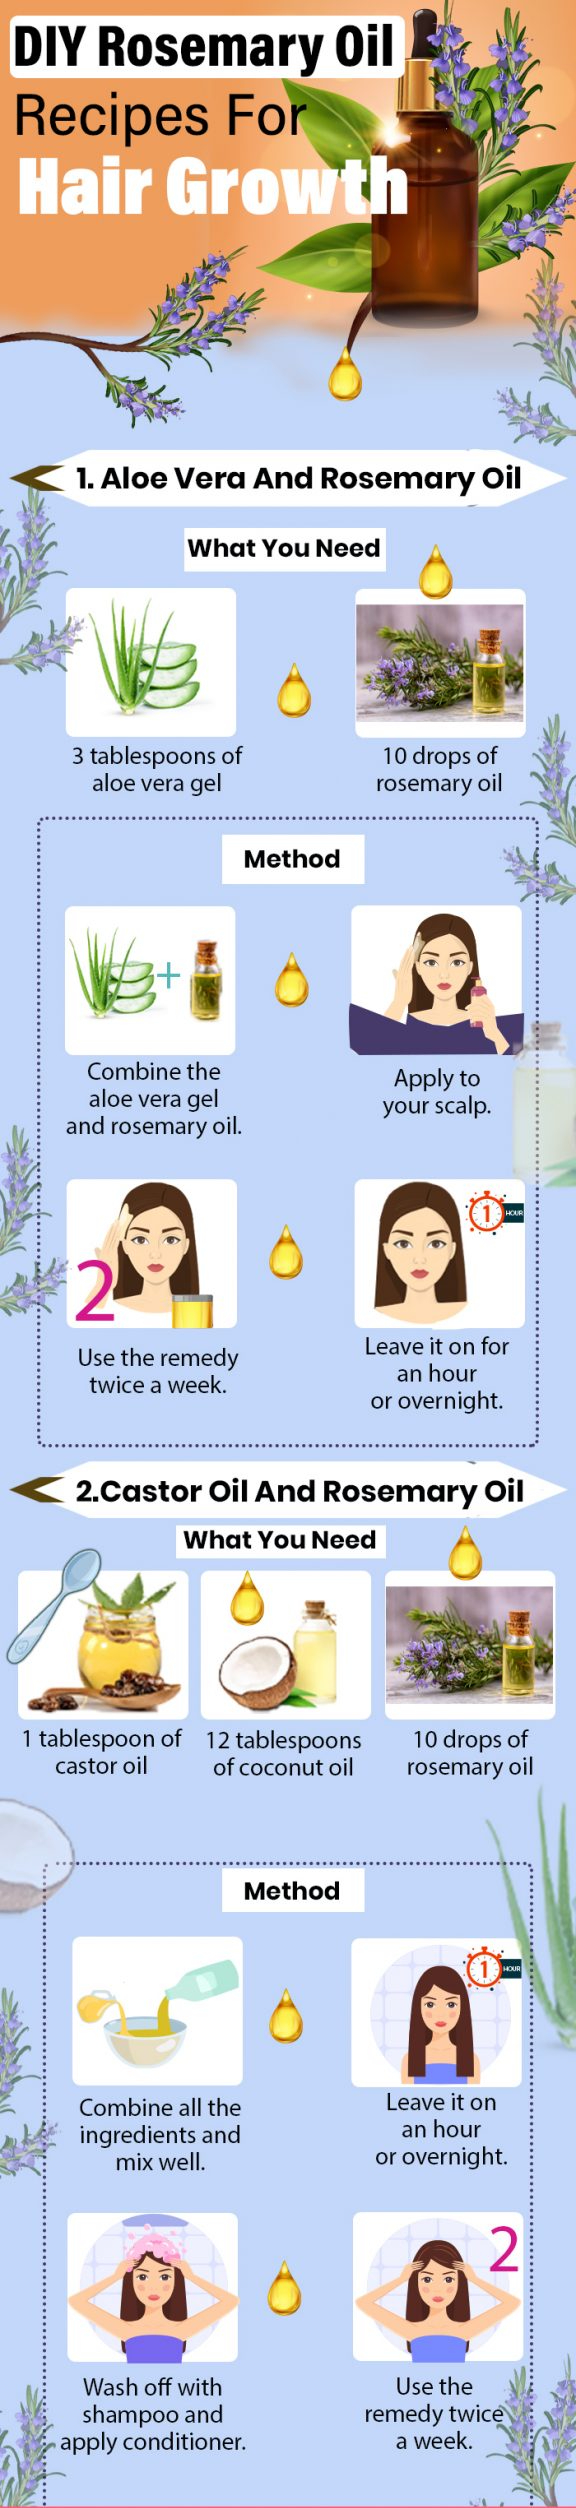 Rosemary oil for hai growth 